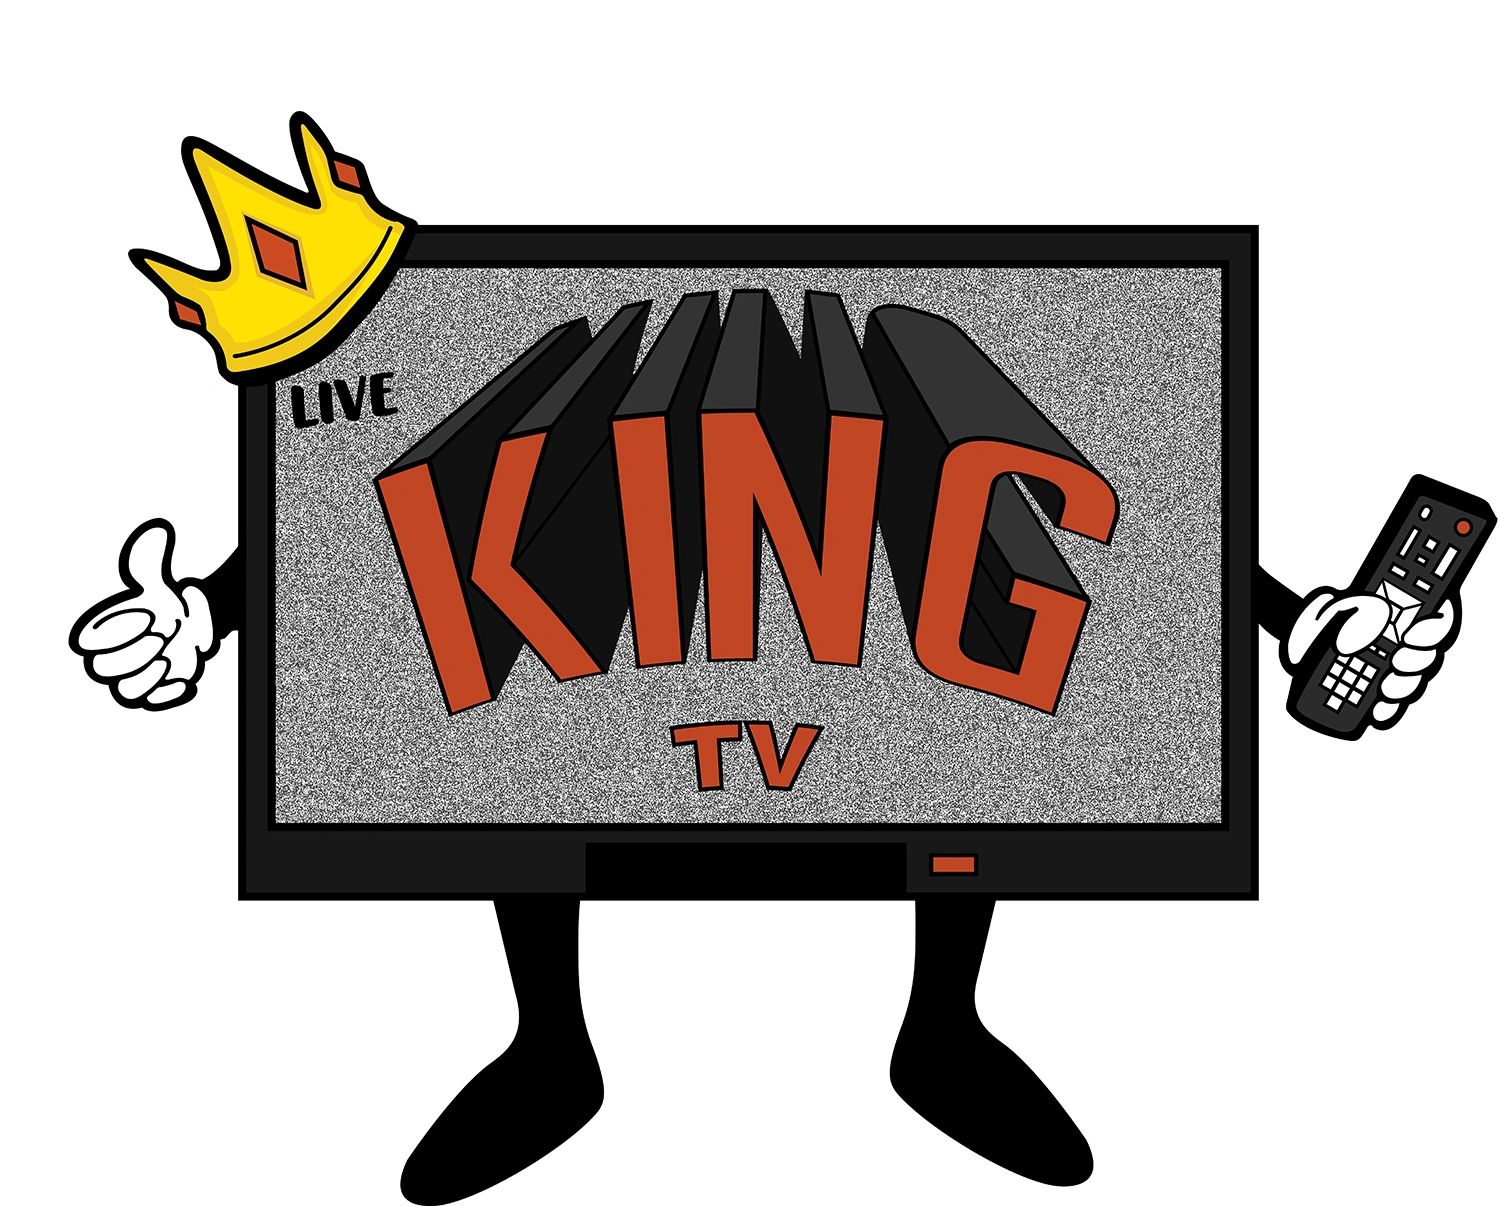 King TV